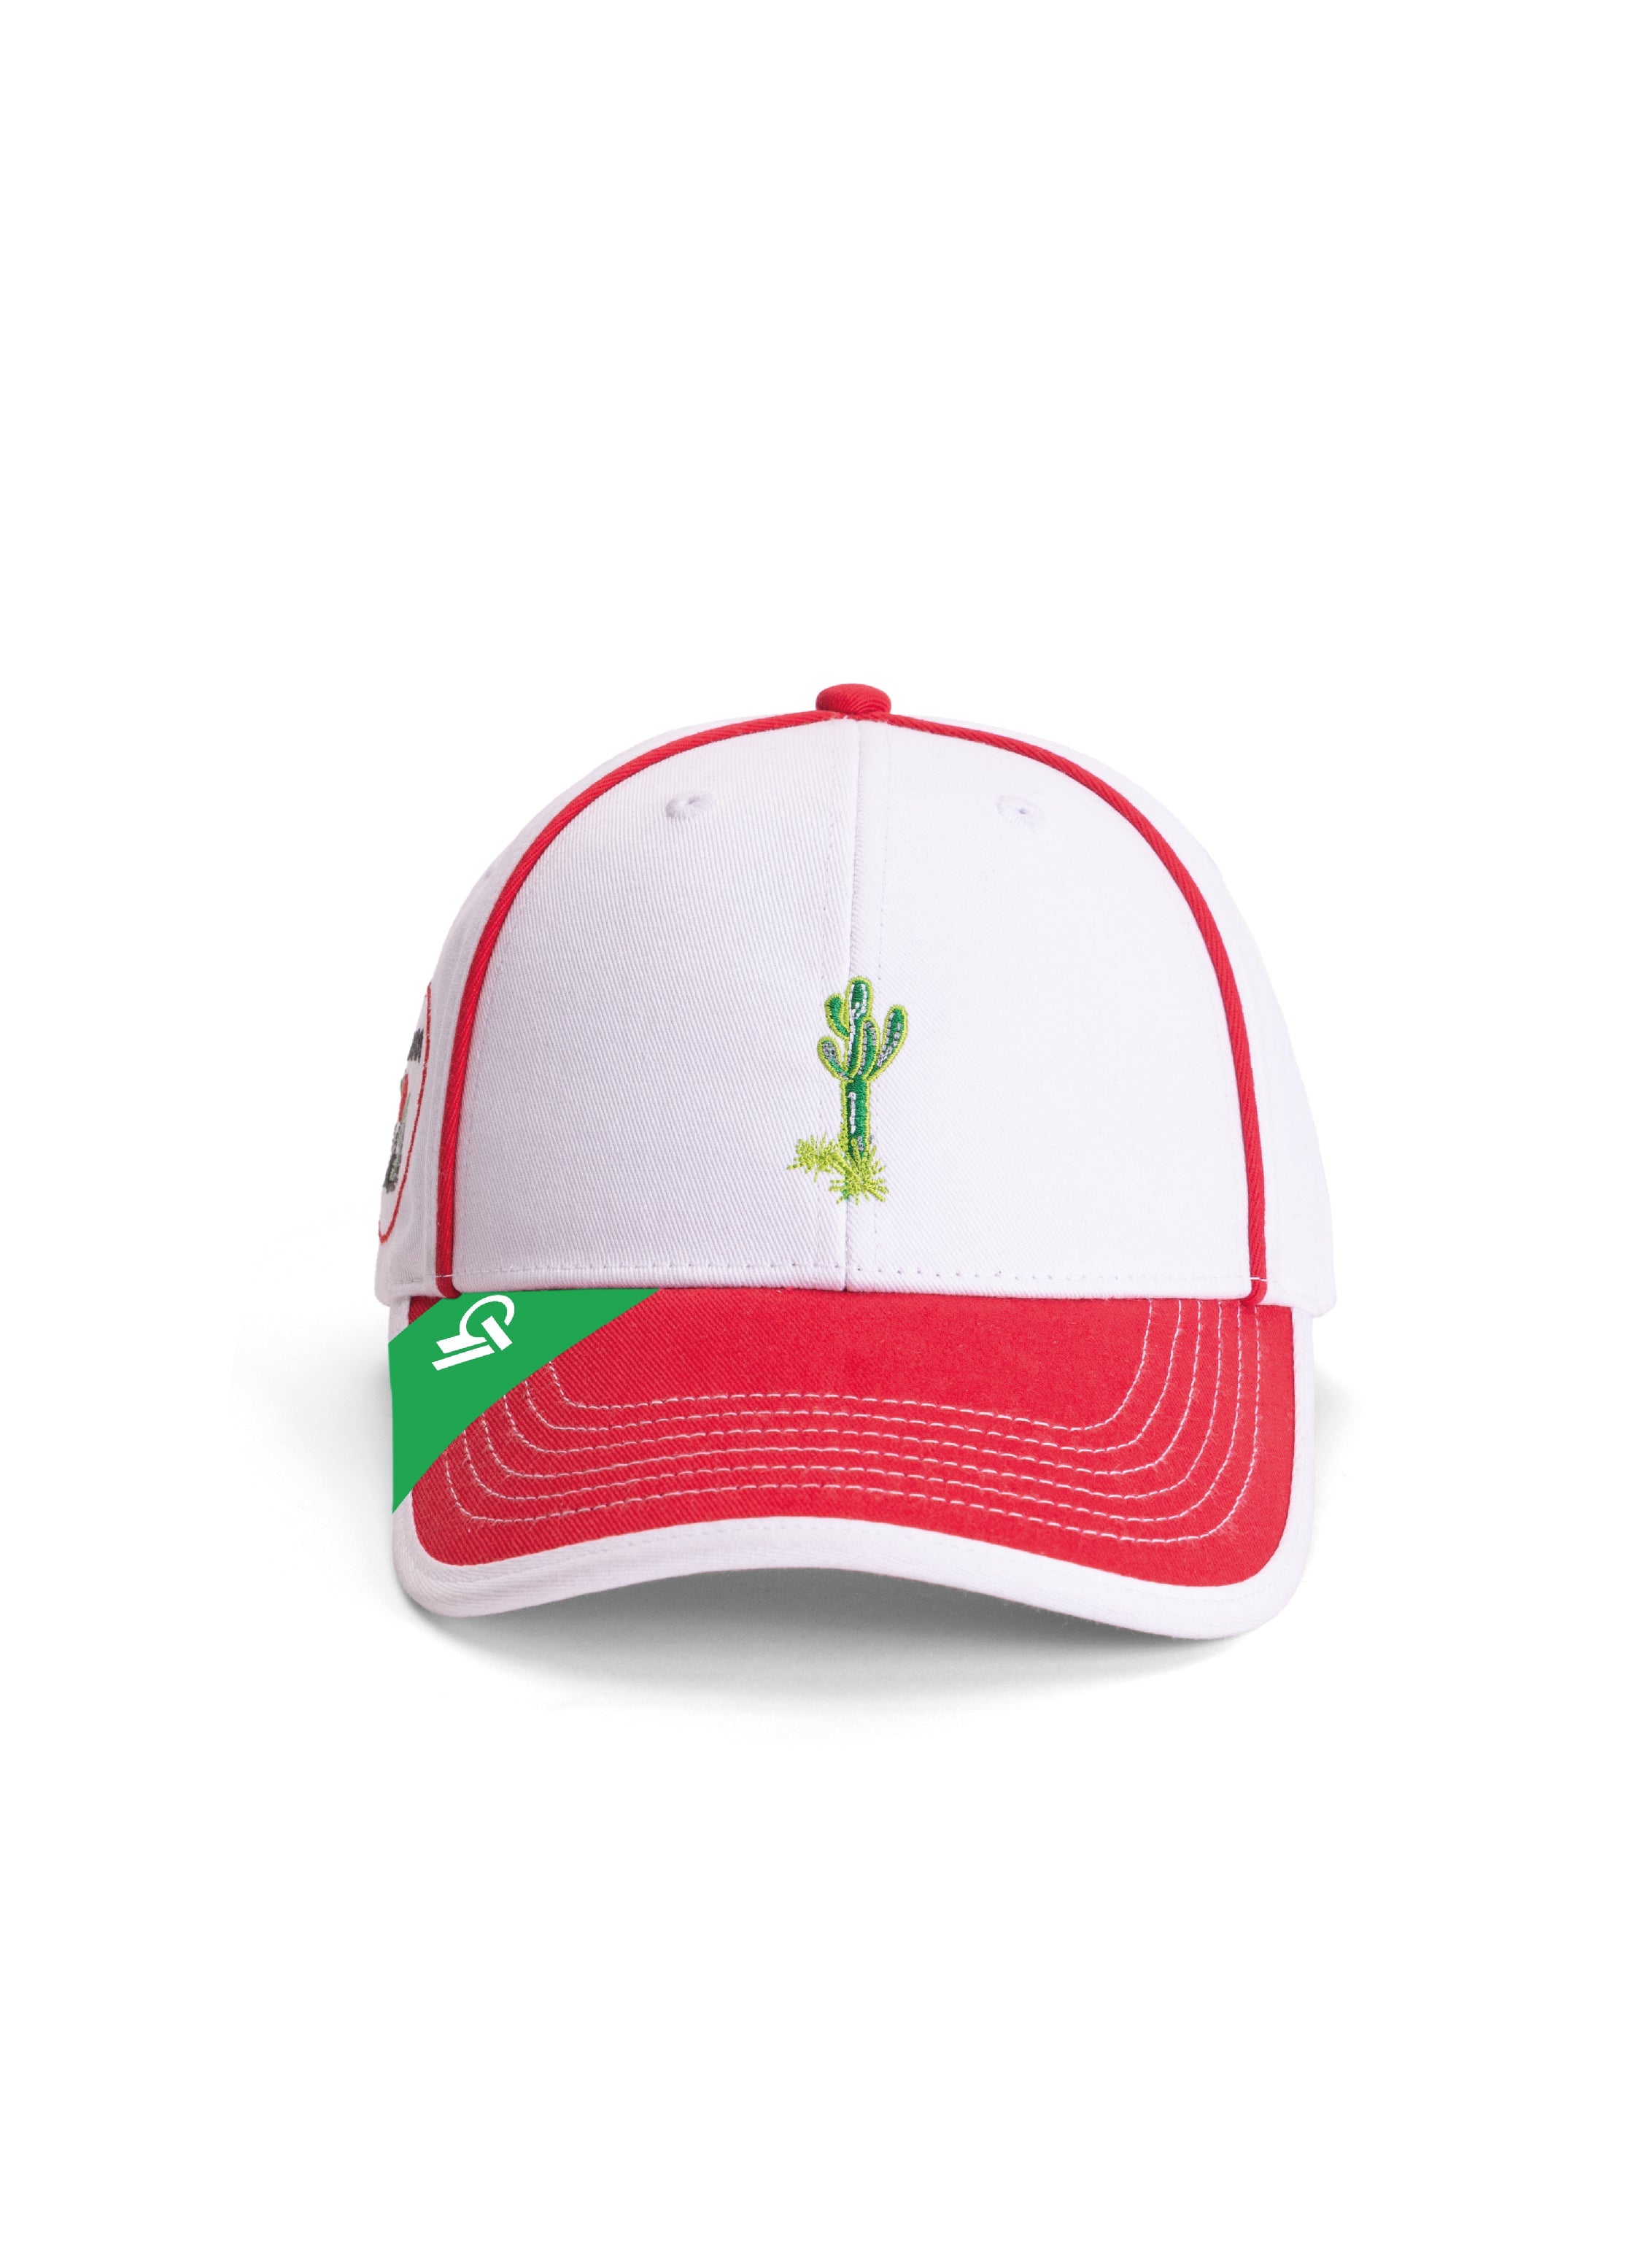 Buy Arizona Cactus Cap front Look